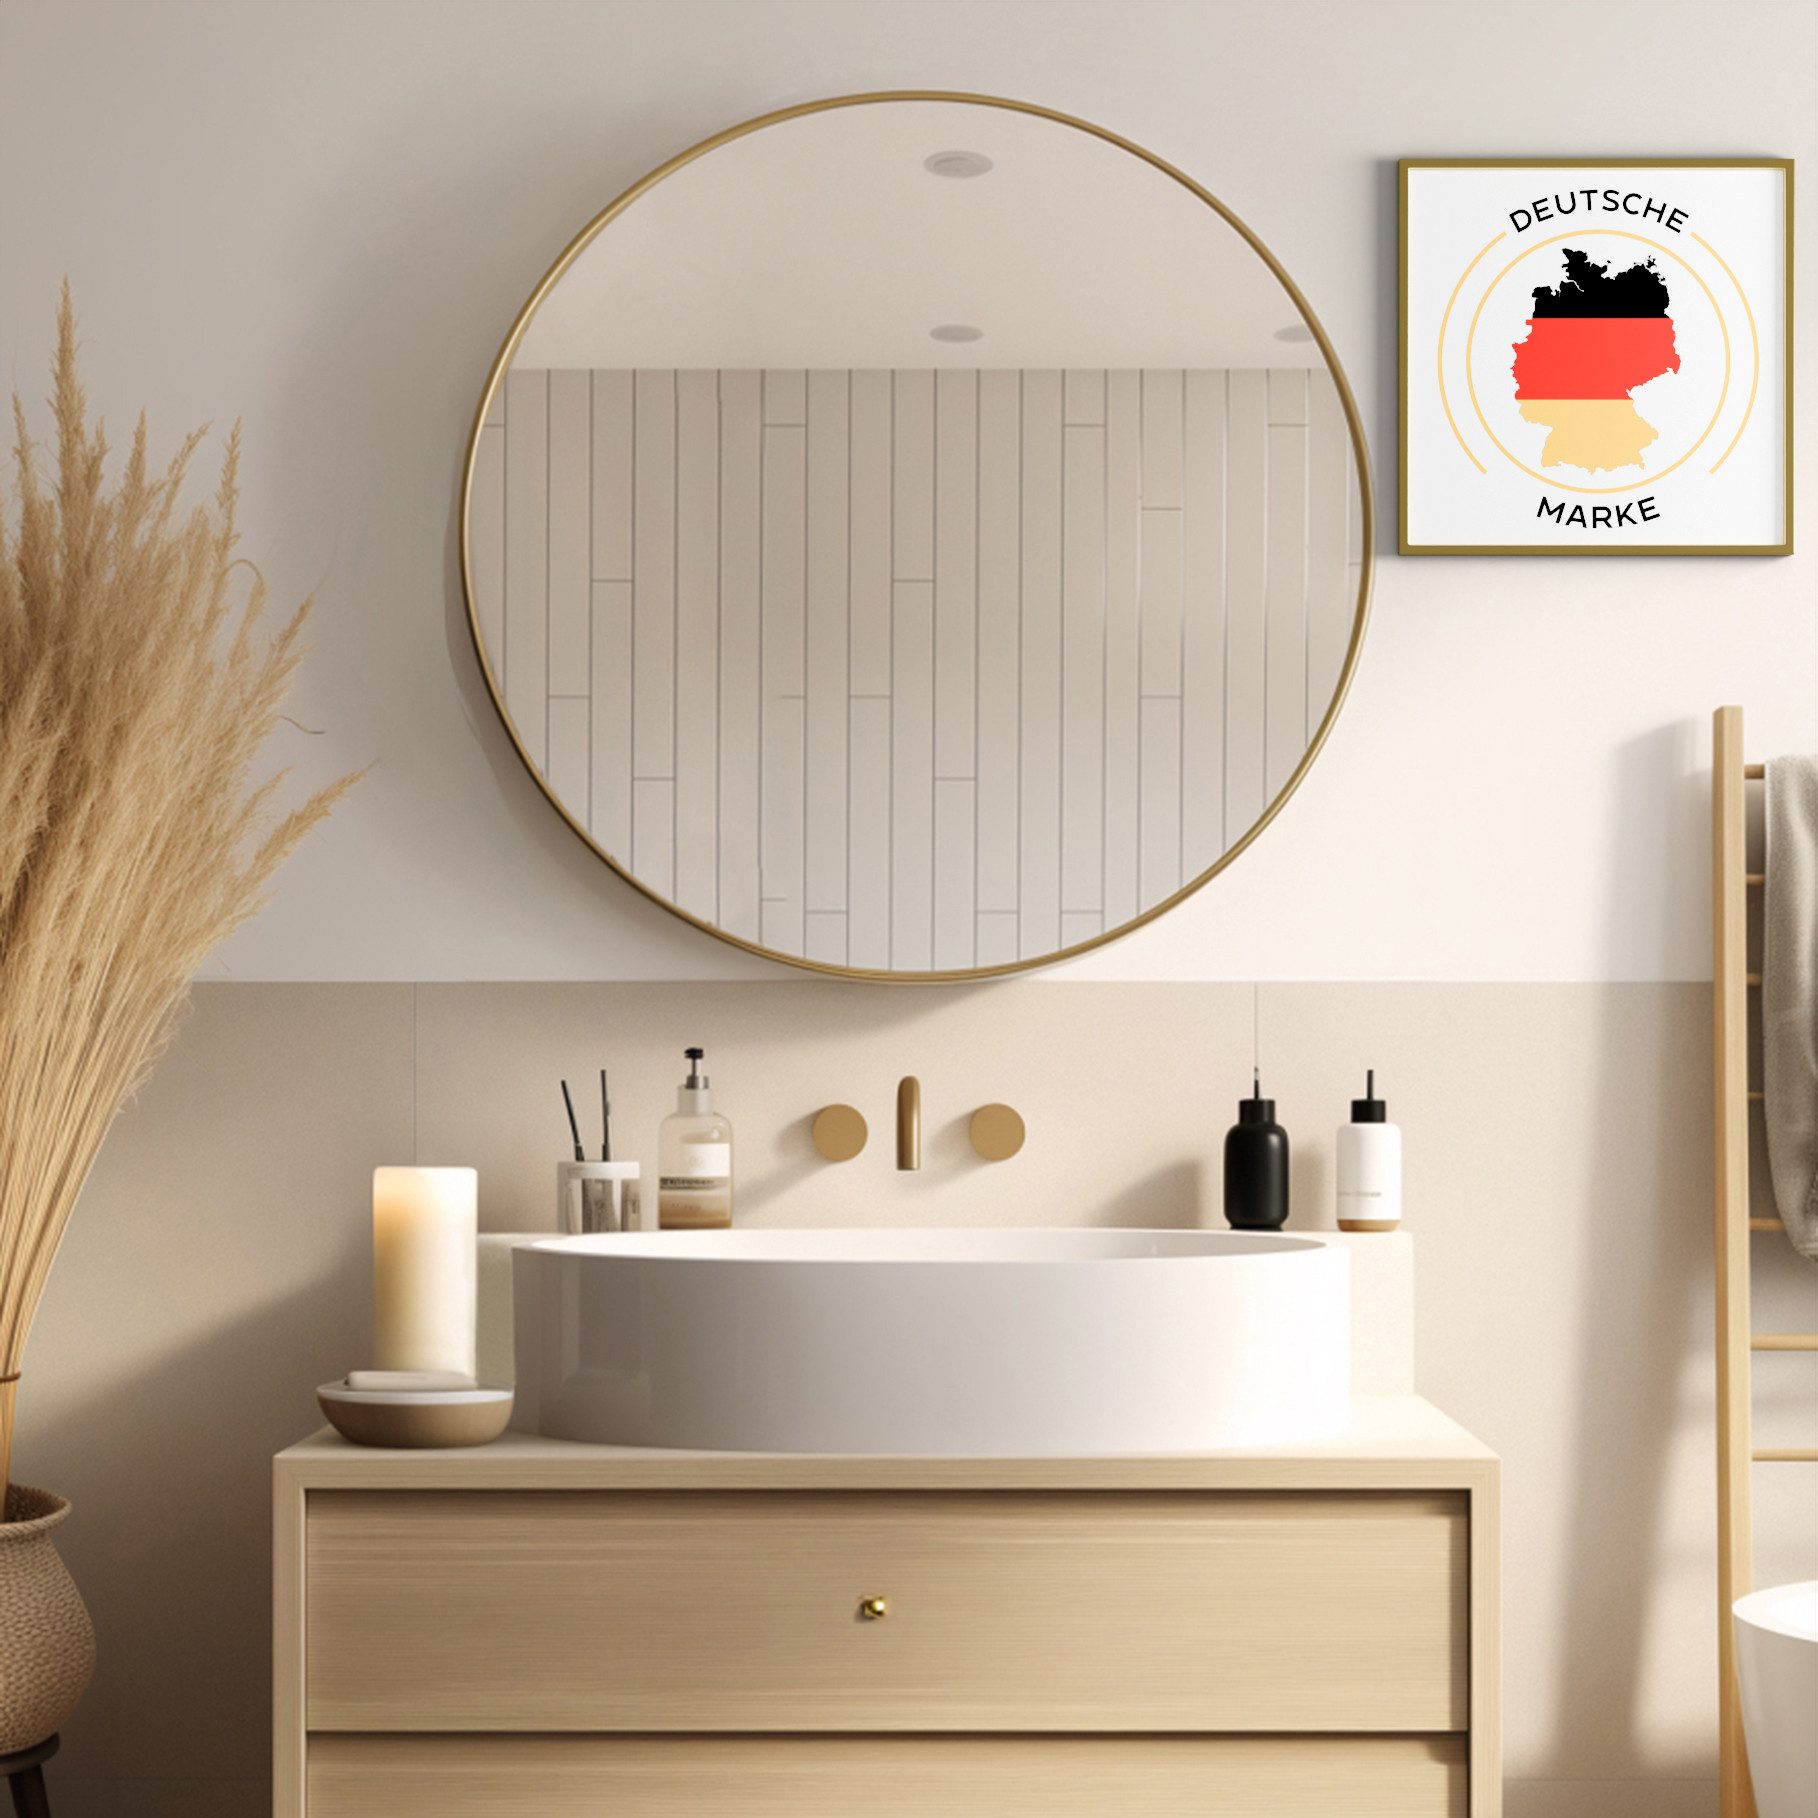 JOULISE Wandspiegel Design Wandspiegel Rund 50/60/70 cm für Badezimmer, Wohnzimmer & Flur